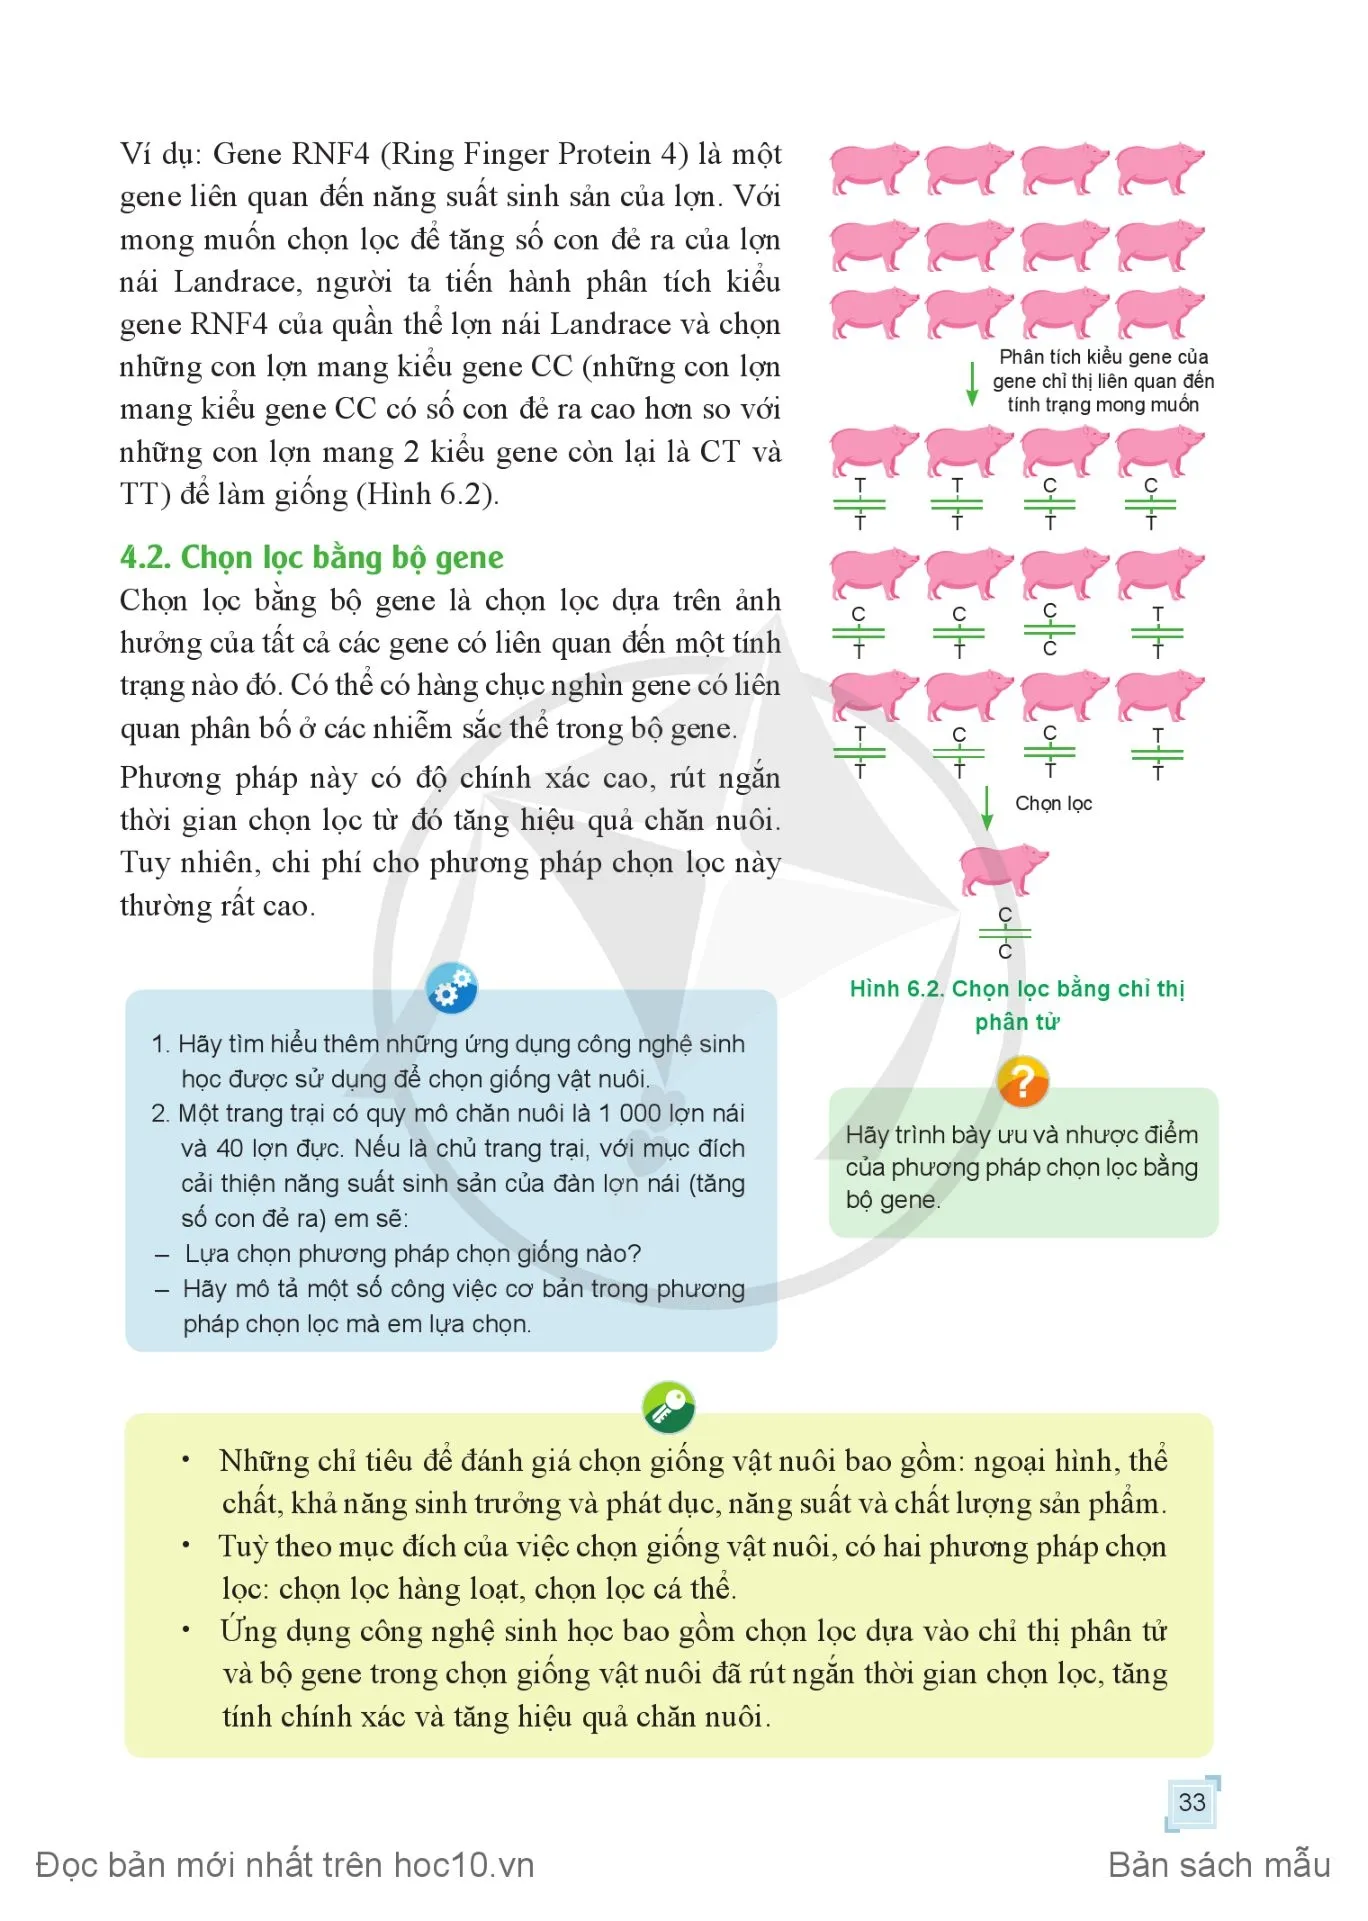 Bài 7. Nhân giống vật nuôi